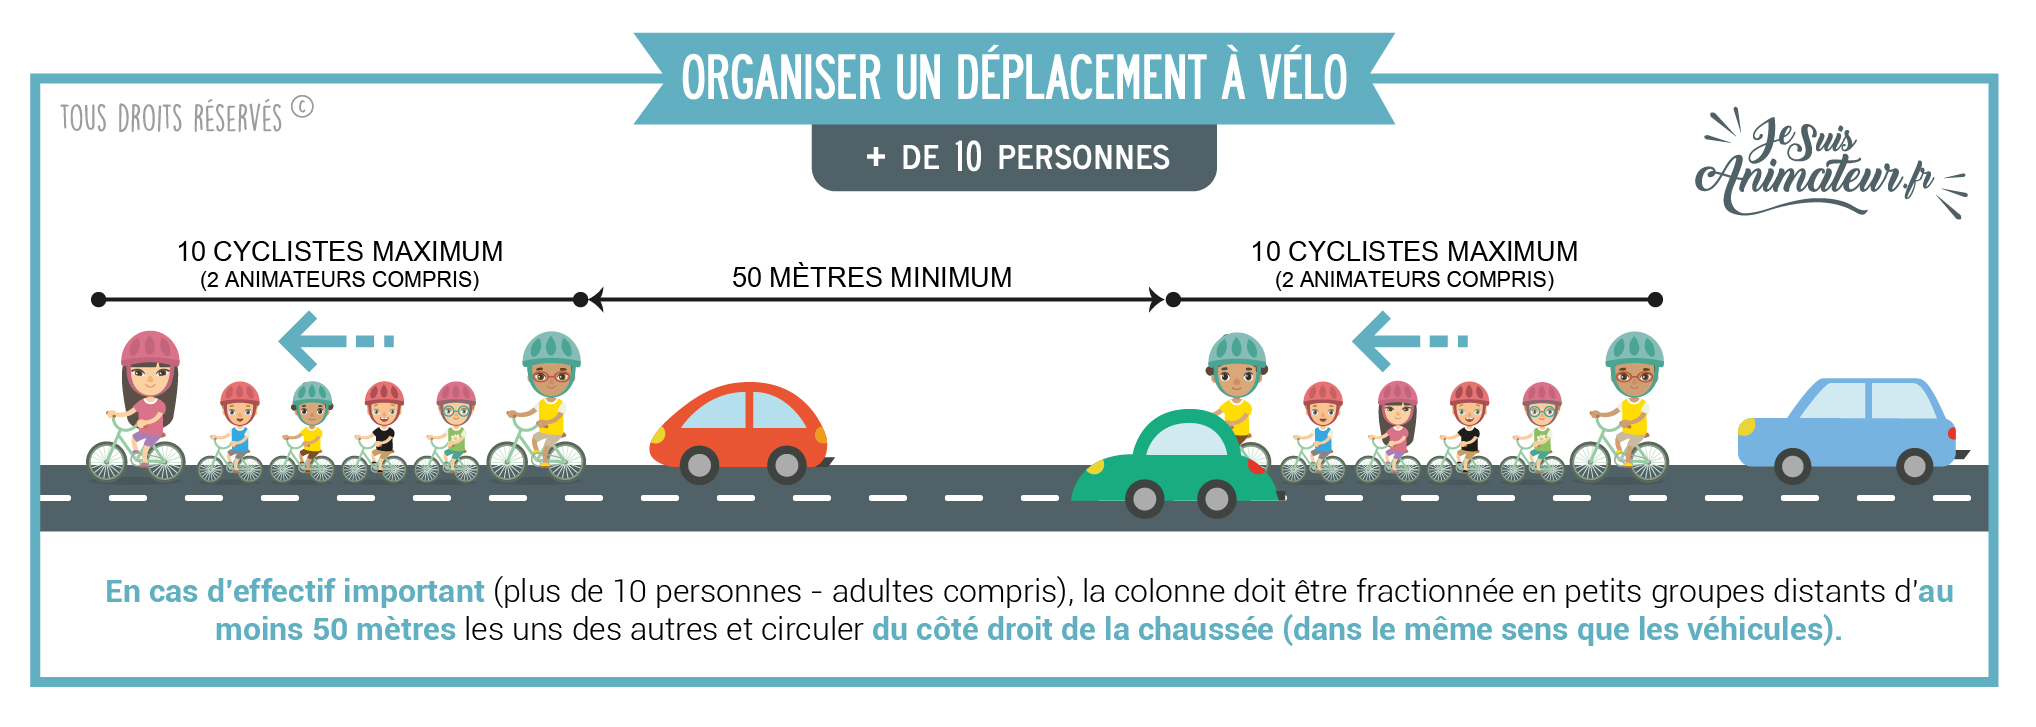 Réglementation déplacement à vélo avec plus de 10 cyclistes